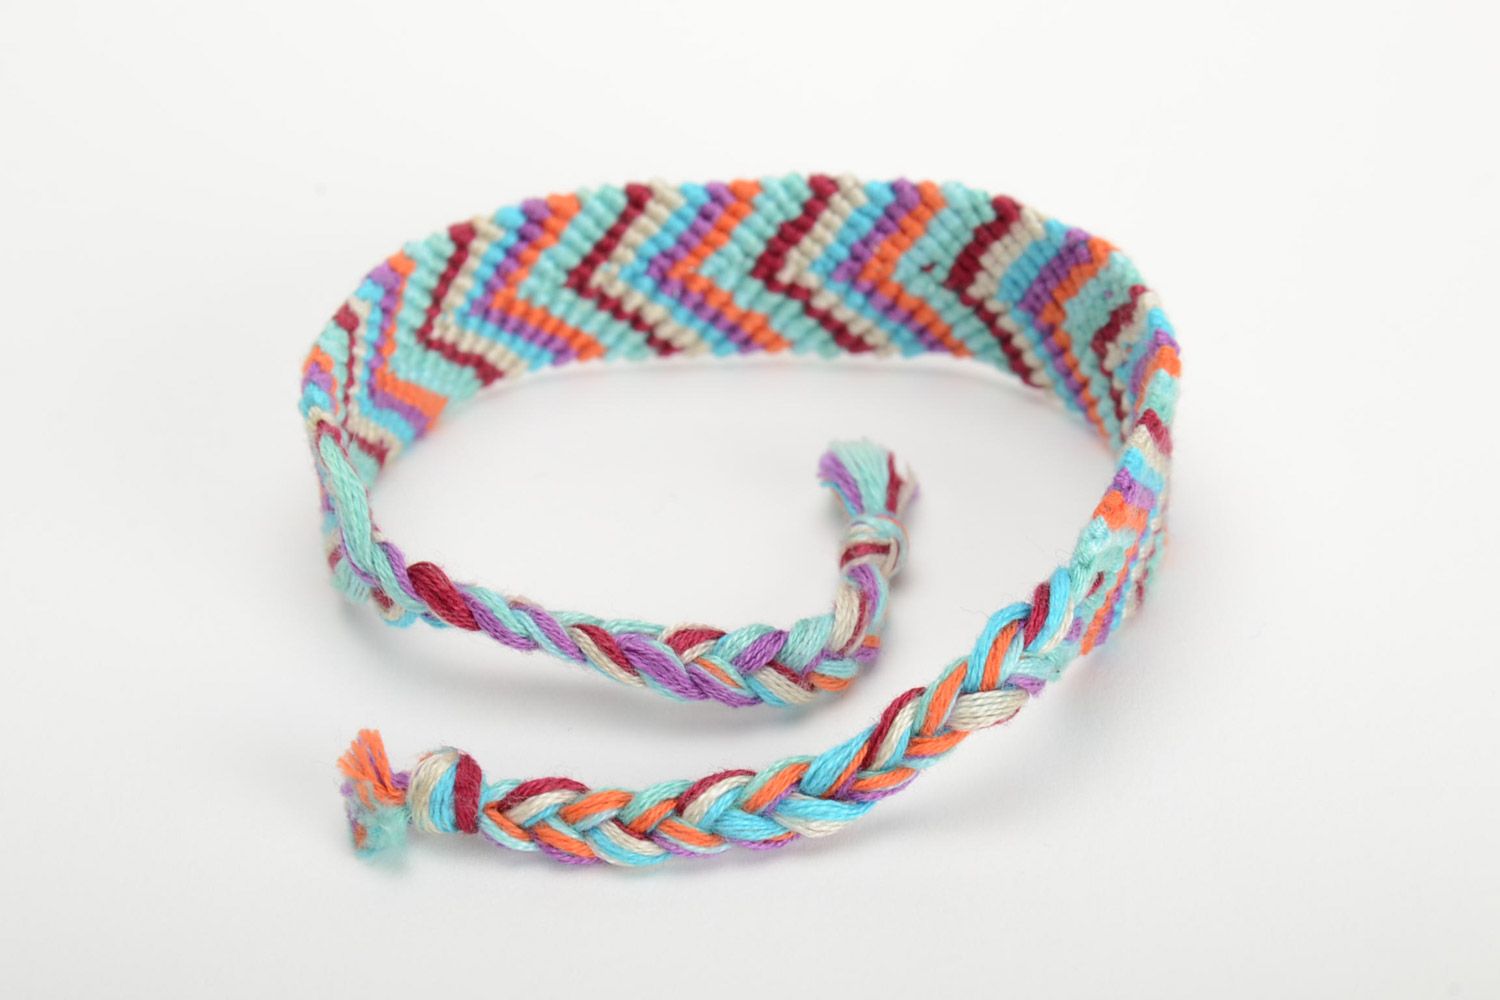 Текстильный браслет из ниток наручный цвветной необычный стильный ручная работа фото 3